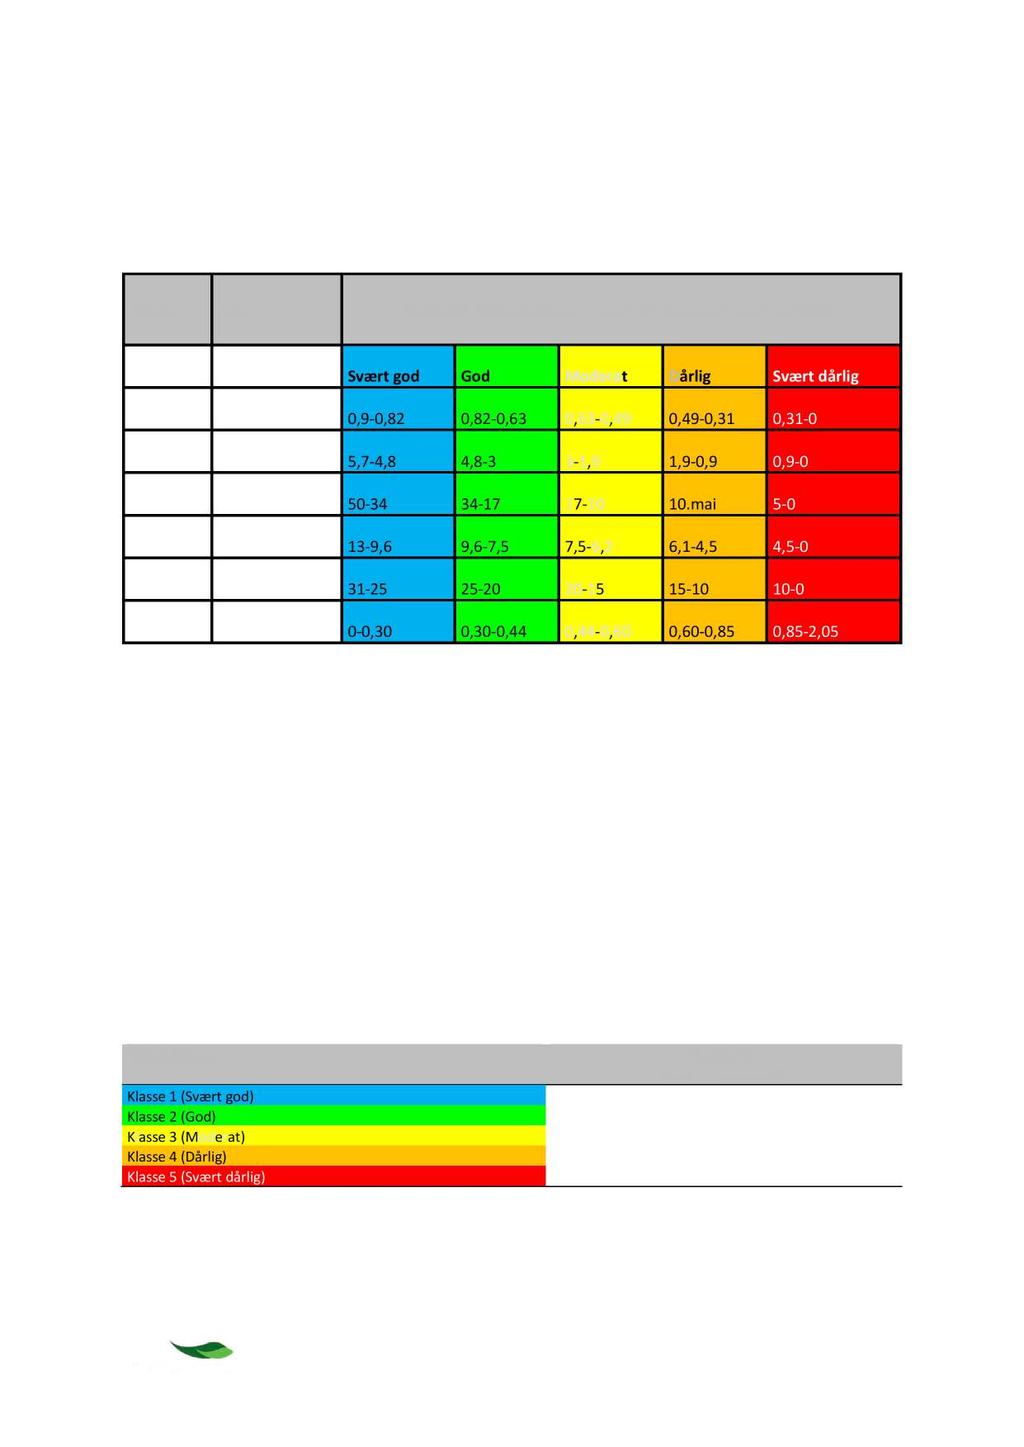 Klassegrenser Klassegrensene for hver indeks er gitt av Veileder 02:2013 revidert 2015 (Tabell v2).